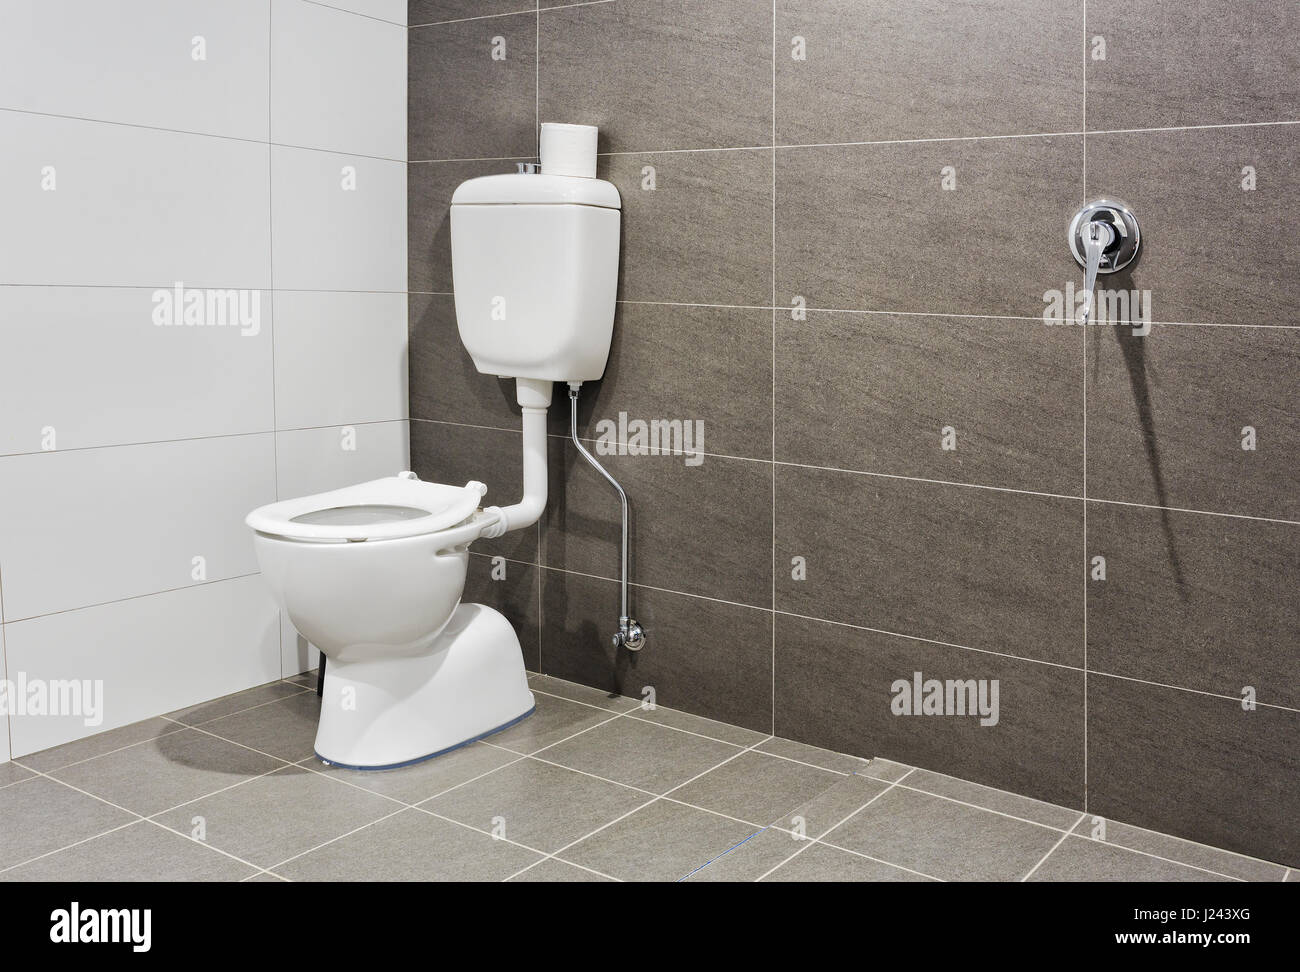 Porcellana Bianca sedile di gabinetto in un moderno bagno per disabili dando spazio extra e accedere a. Foto Stock